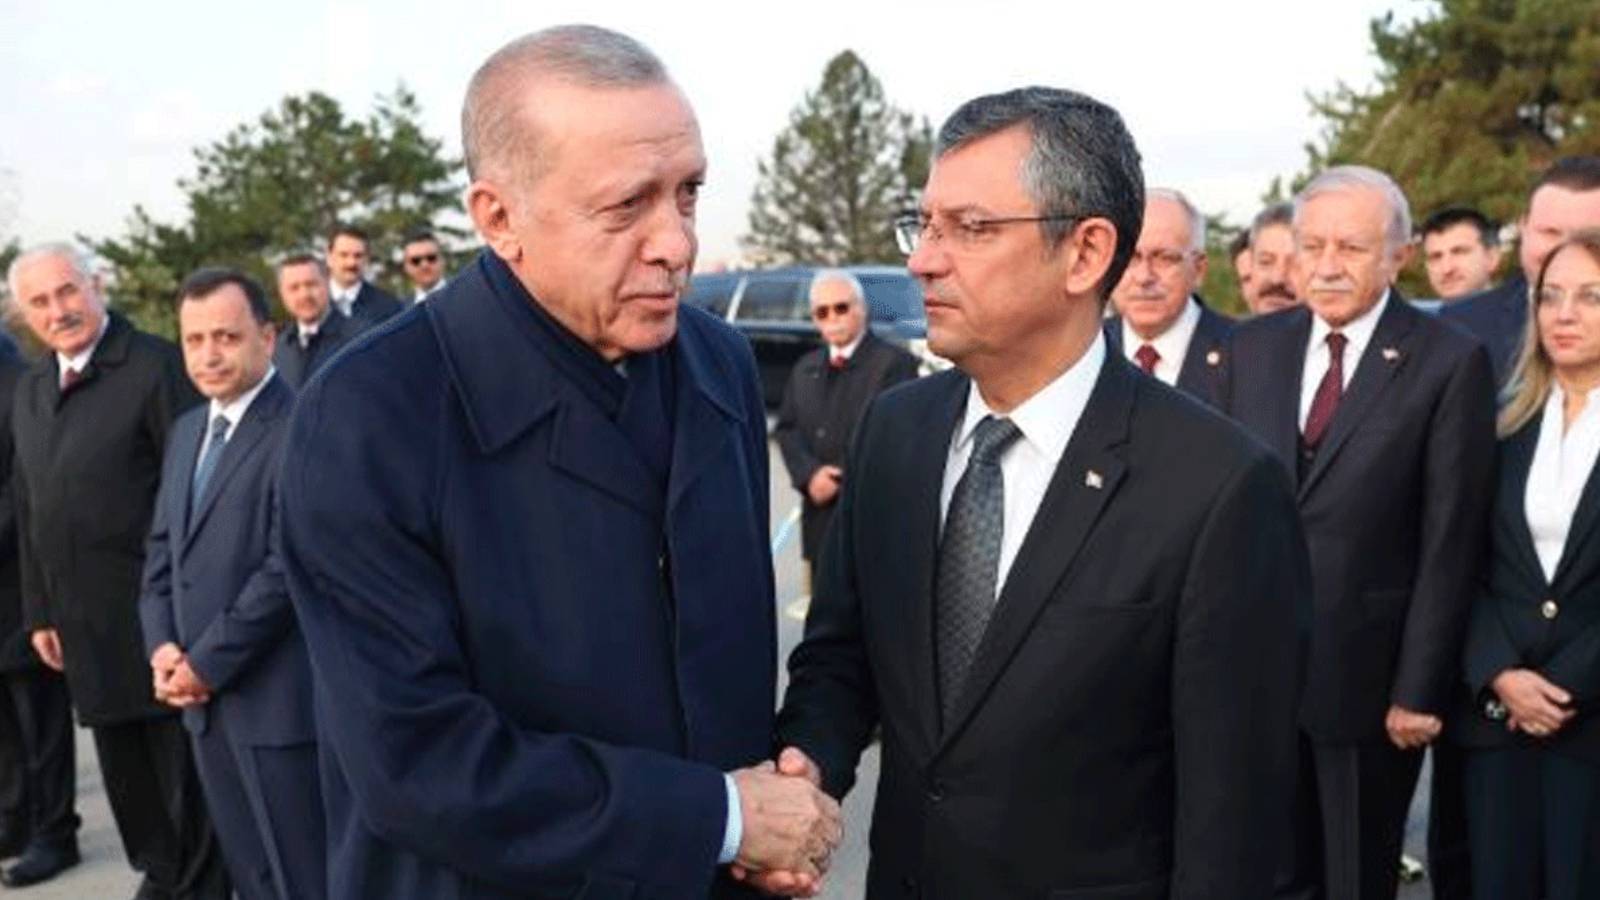 chp'li kurmaylar anlattı: özel-erdoğan görüşmesinde neler konuşulacak?